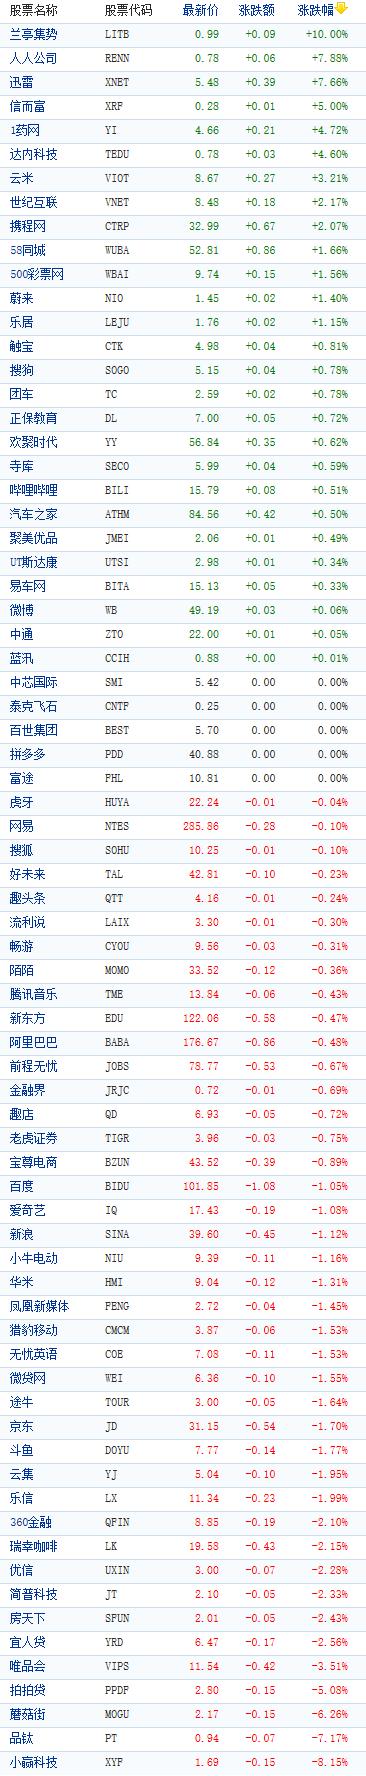 中国概念股周四收盘涨跌互现 迅雷涨近8%